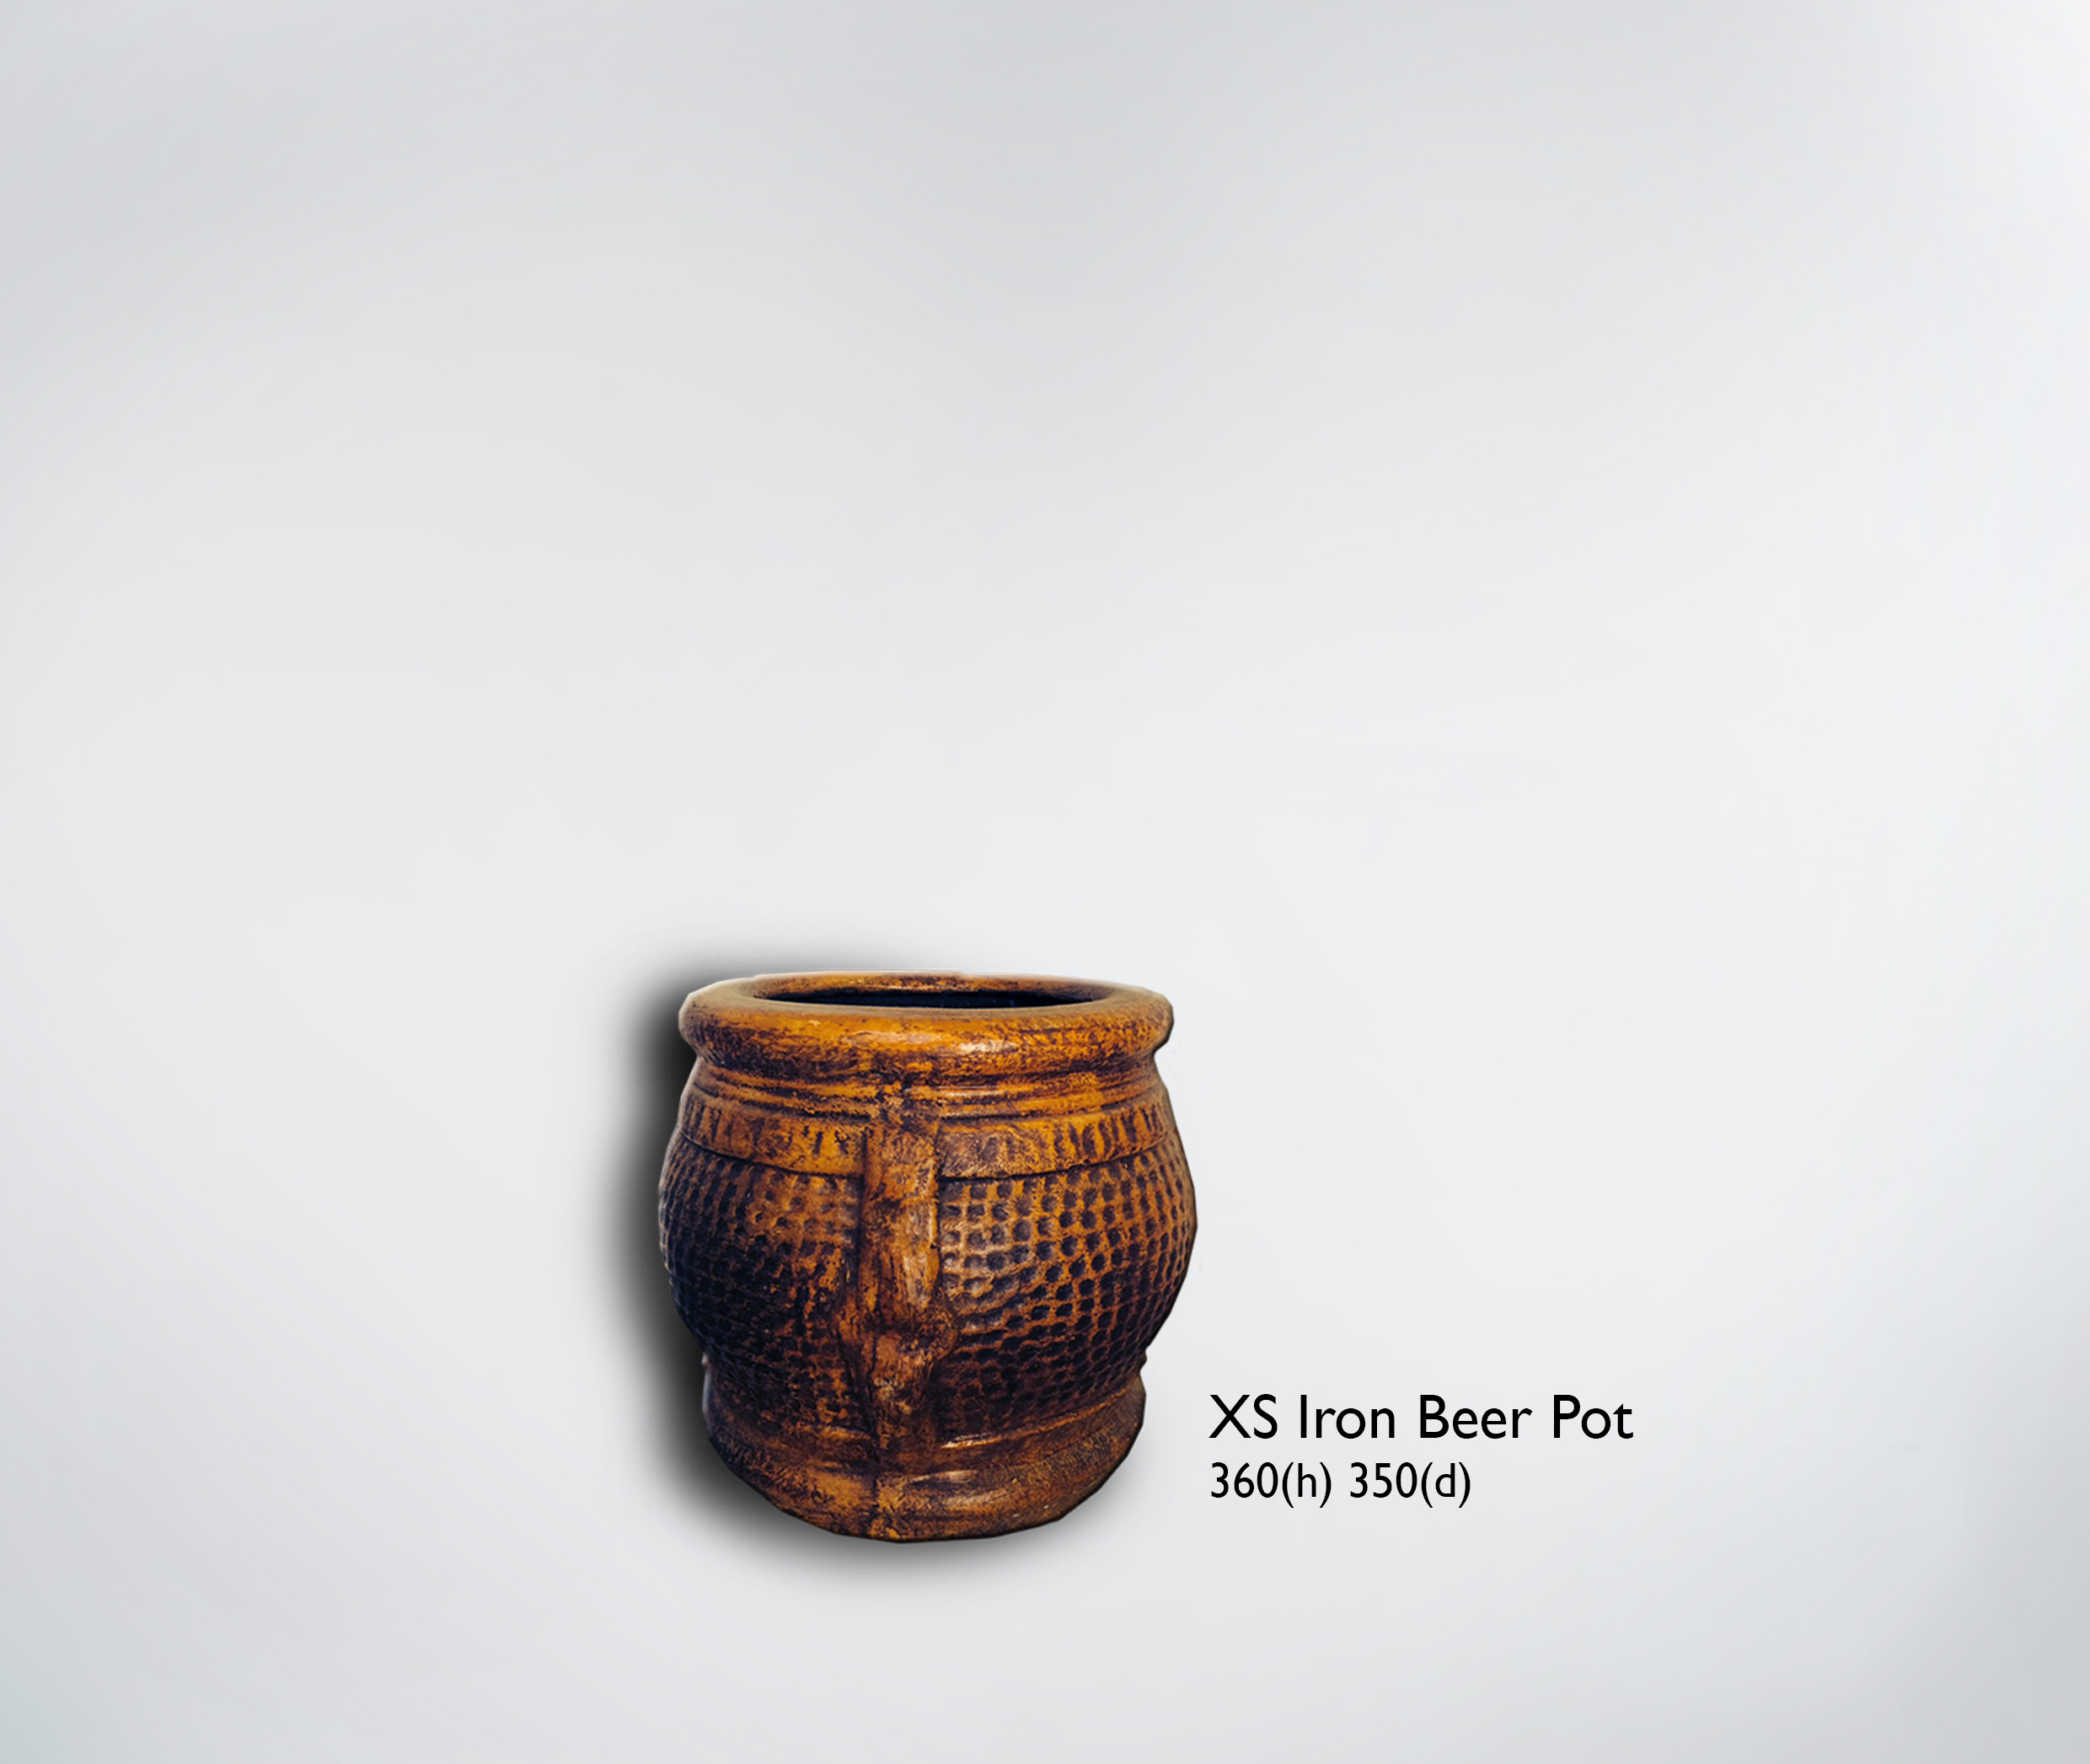 XS Iron Beer Pot